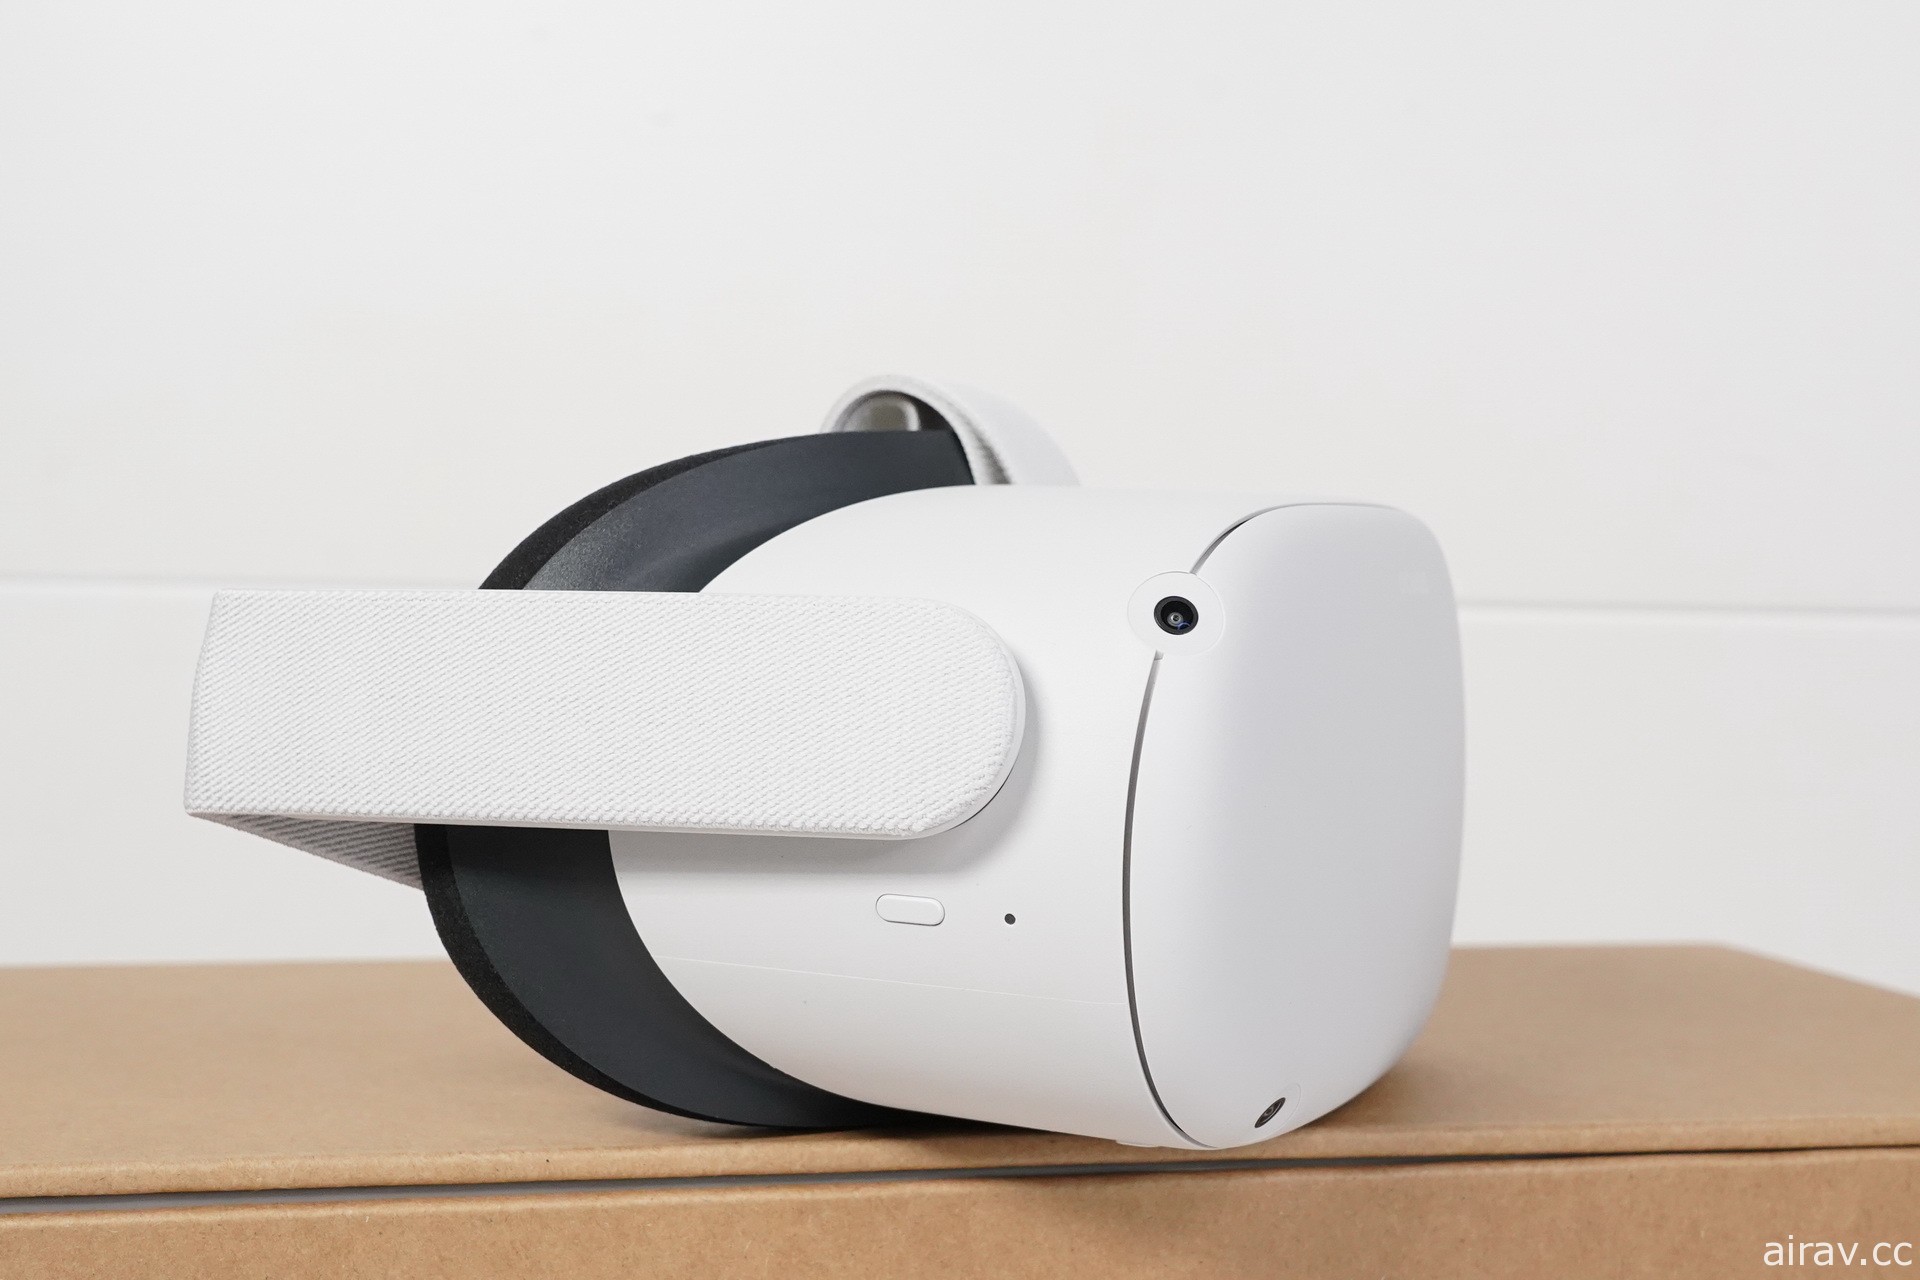 【开箱】新一代 VR 头戴式装置 Oculus Quest 2 发售 一探白色设计新主机和控制器样貌